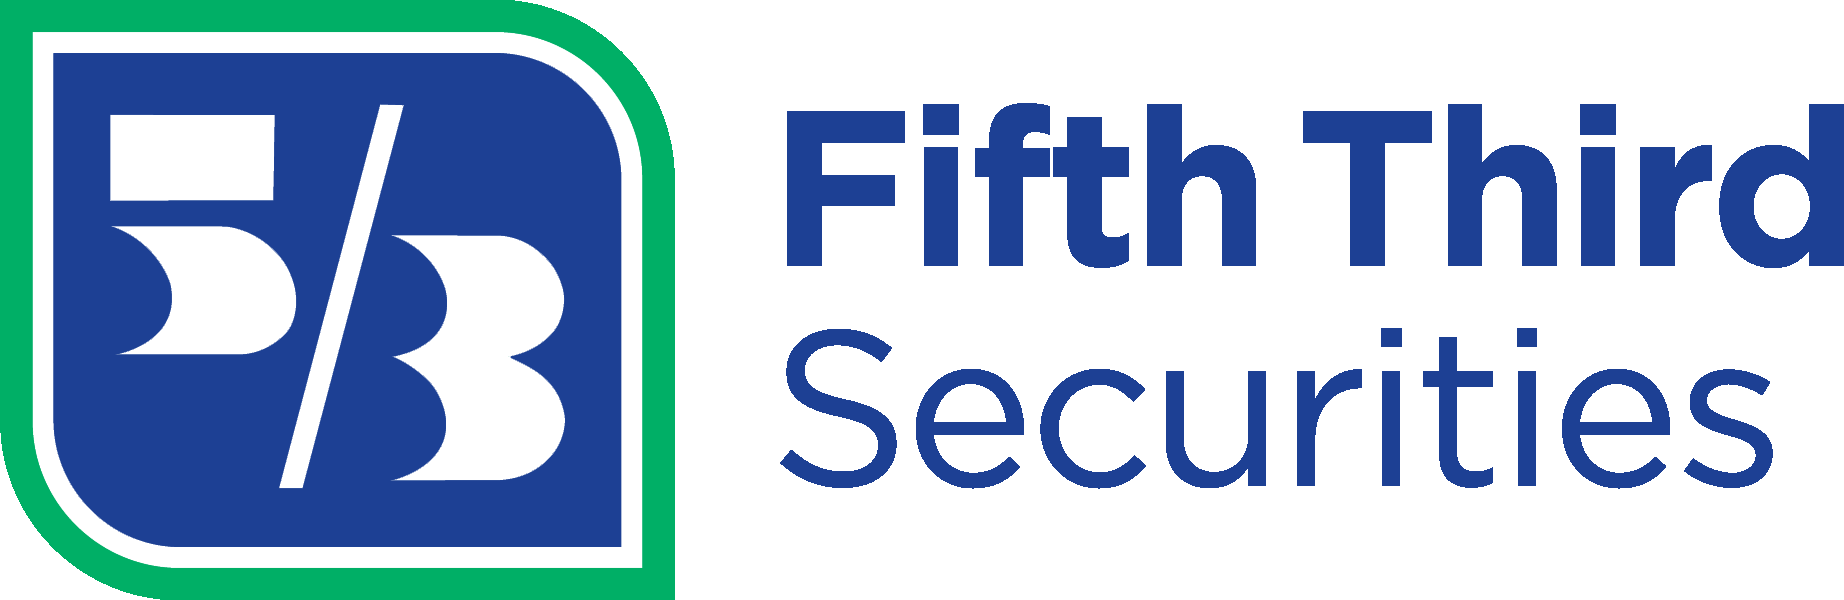 Fifth Third Bank Securities logo